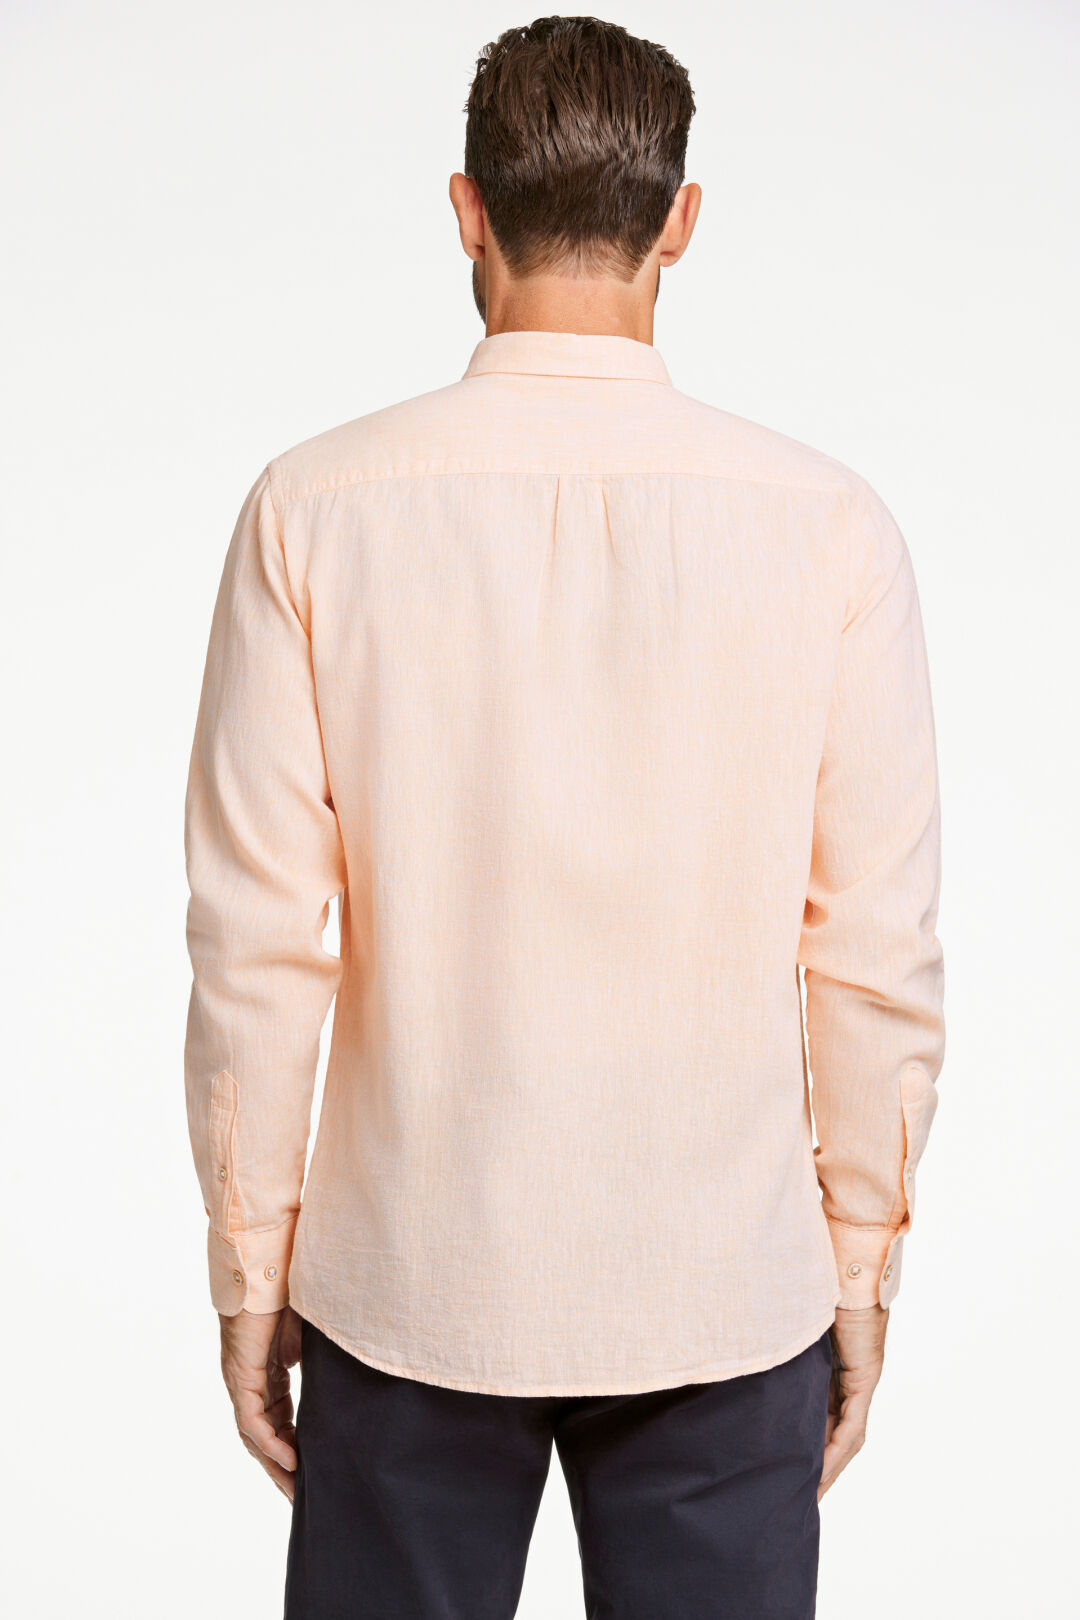 Cotton/linen shirt L/S